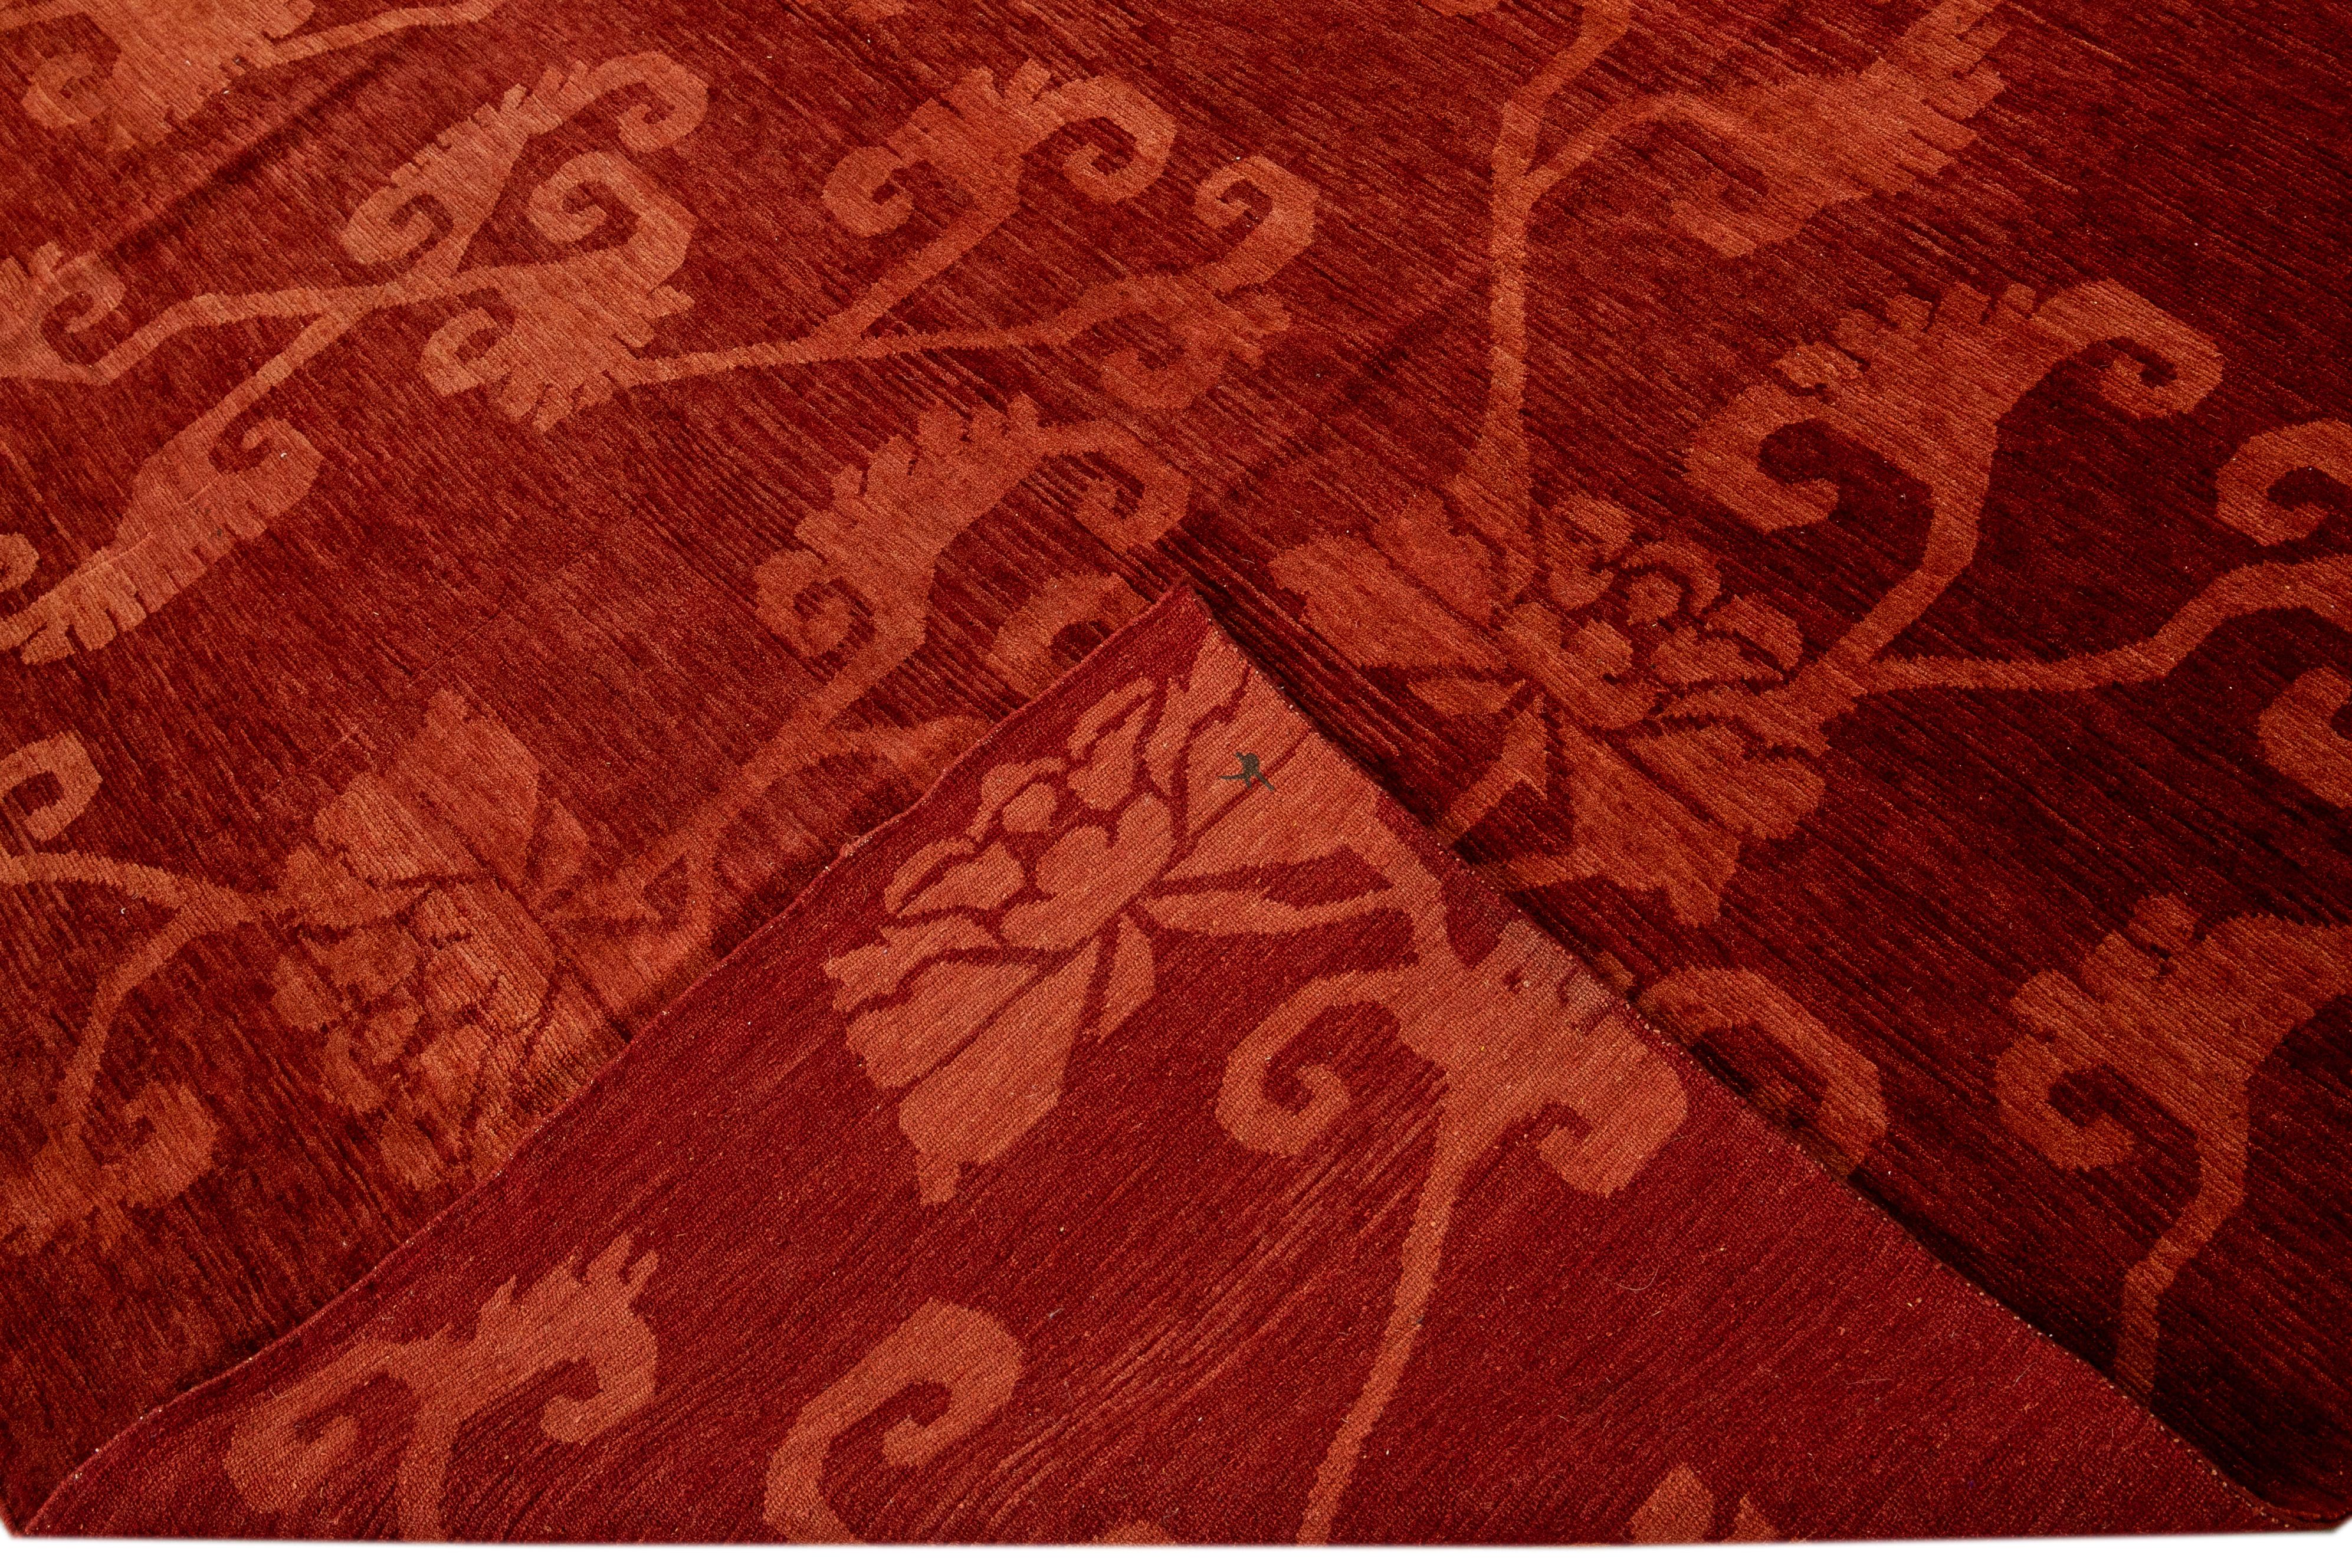 Schöner moderner tibetischer handgeknüpfter Woll- und Seidenteppich mit rotem Feld. Dieser tibetische Teppich hat rote Seidenakzente in einem wunderschönen floralen All-Over-Muster von Lyndhurst.

Dieser Teppich misst 8'7